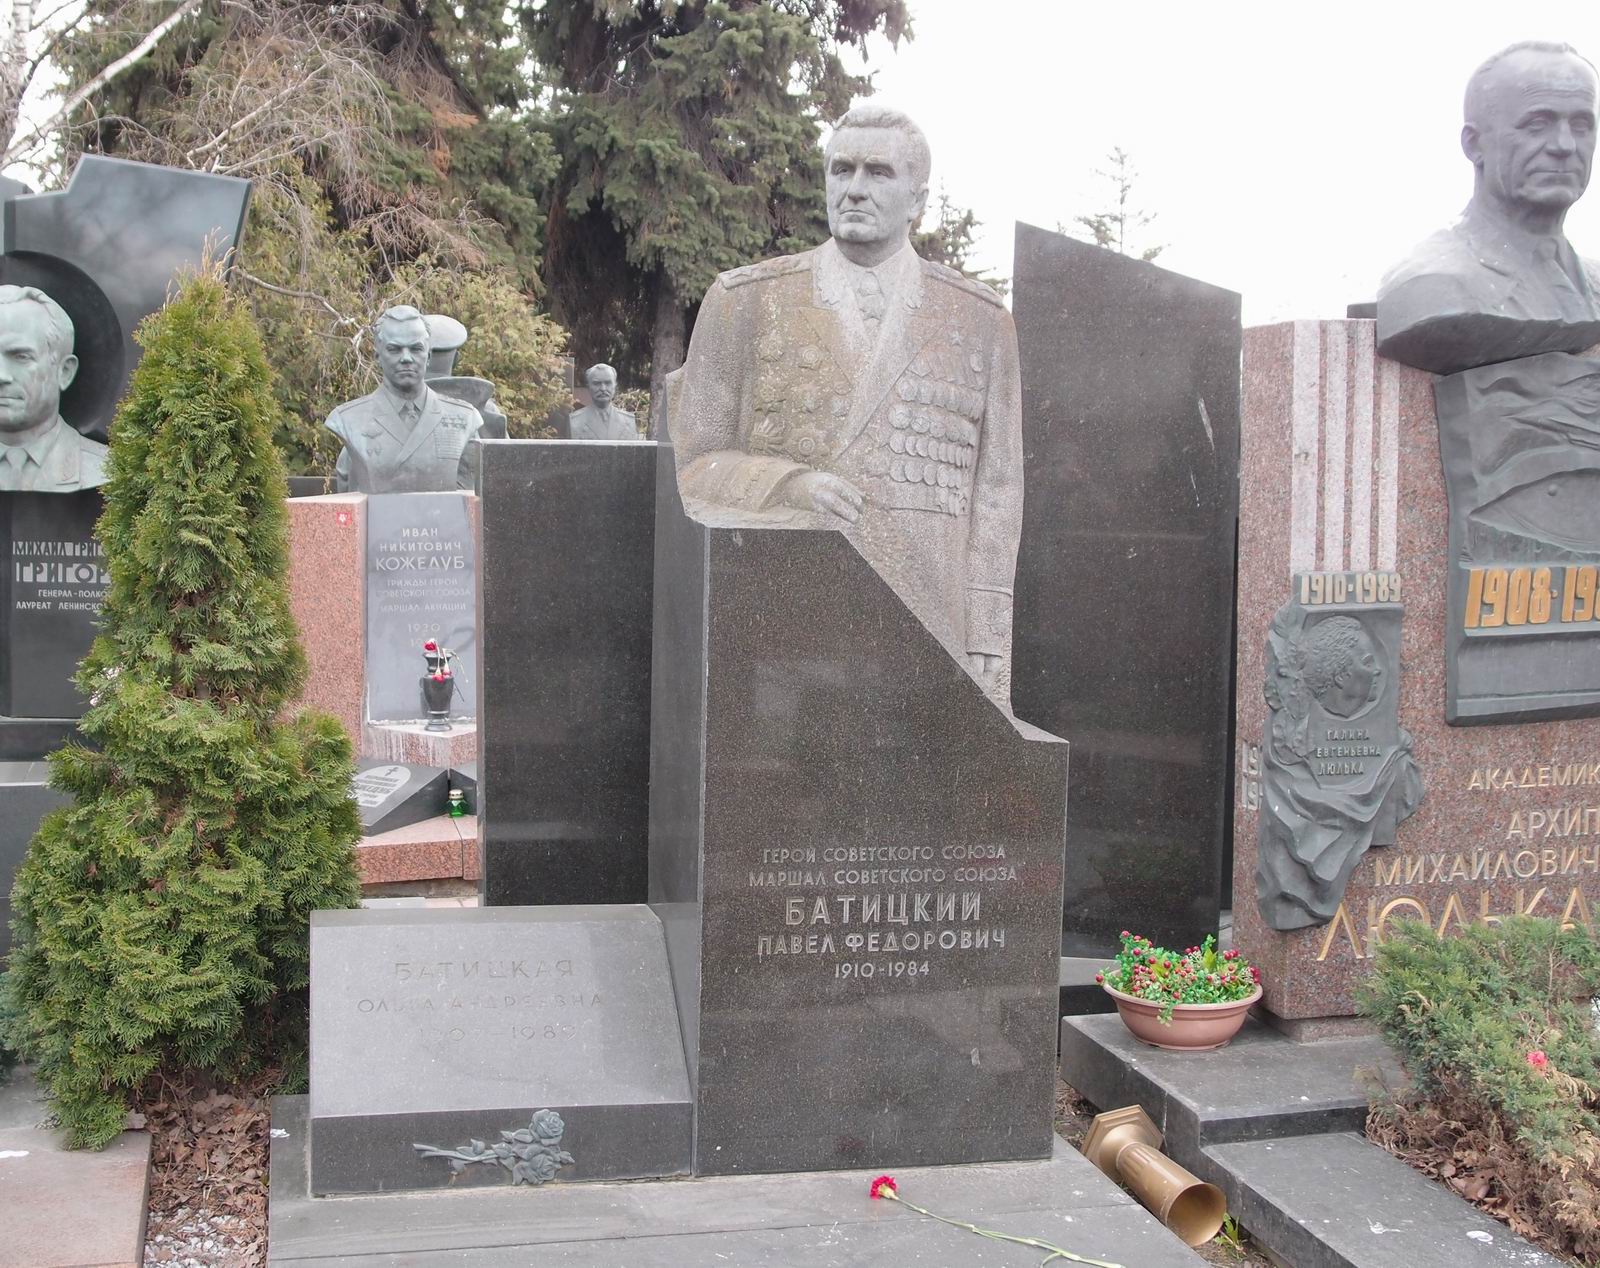 Памятник на могиле Батицкого П.Ф. (1910–1984), ск. А.Елецкий, арх. Е.Ефремов, на Новодевичьем кладбище (7–20–11). Нажмите левую кнопку мыши чтобы увидеть фрагмент памятника.